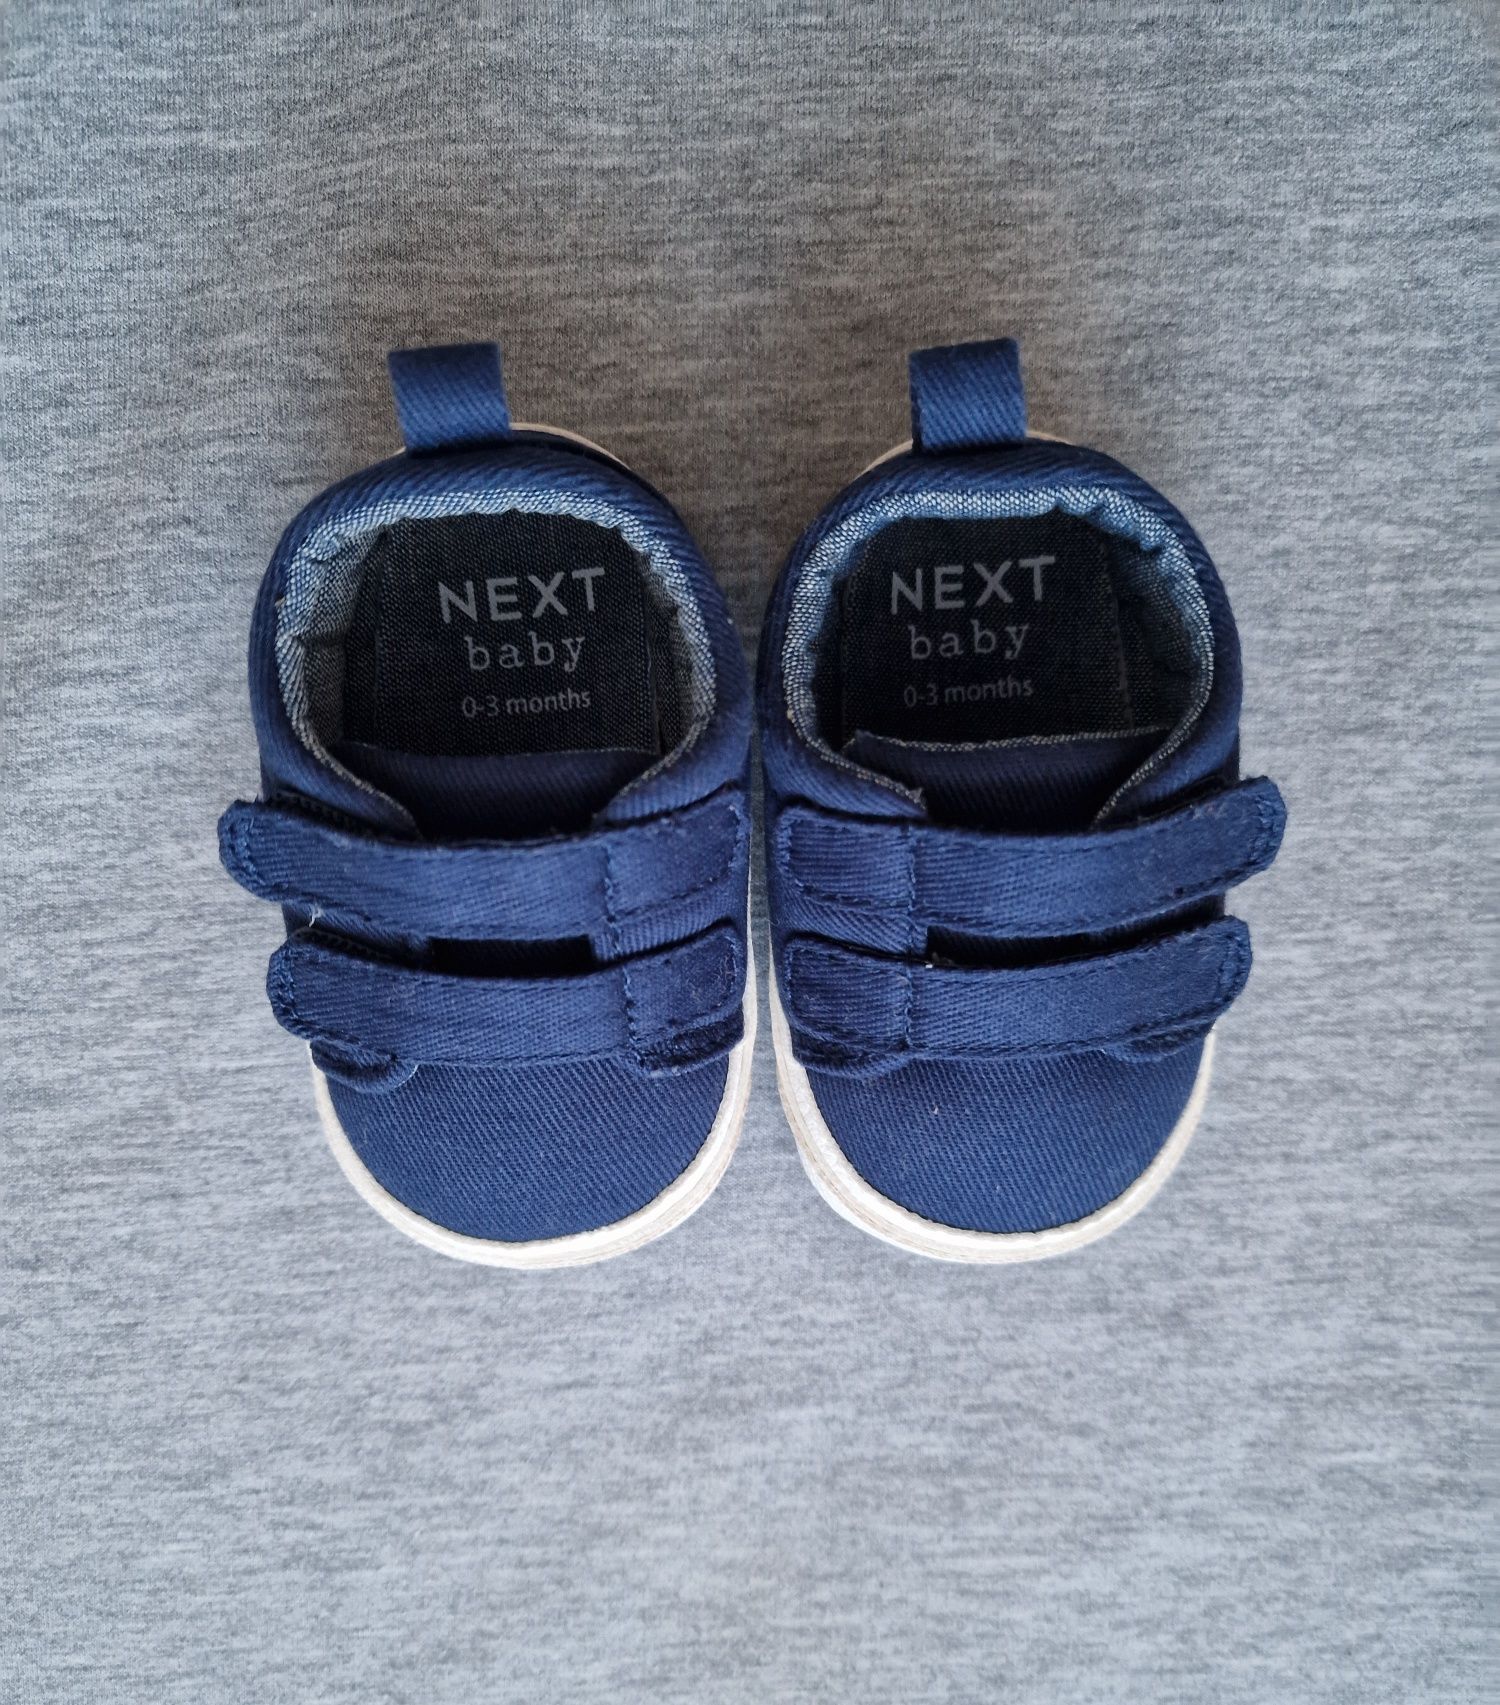 Pantofi bebe, Next, mărimea 15, 0-3 luni